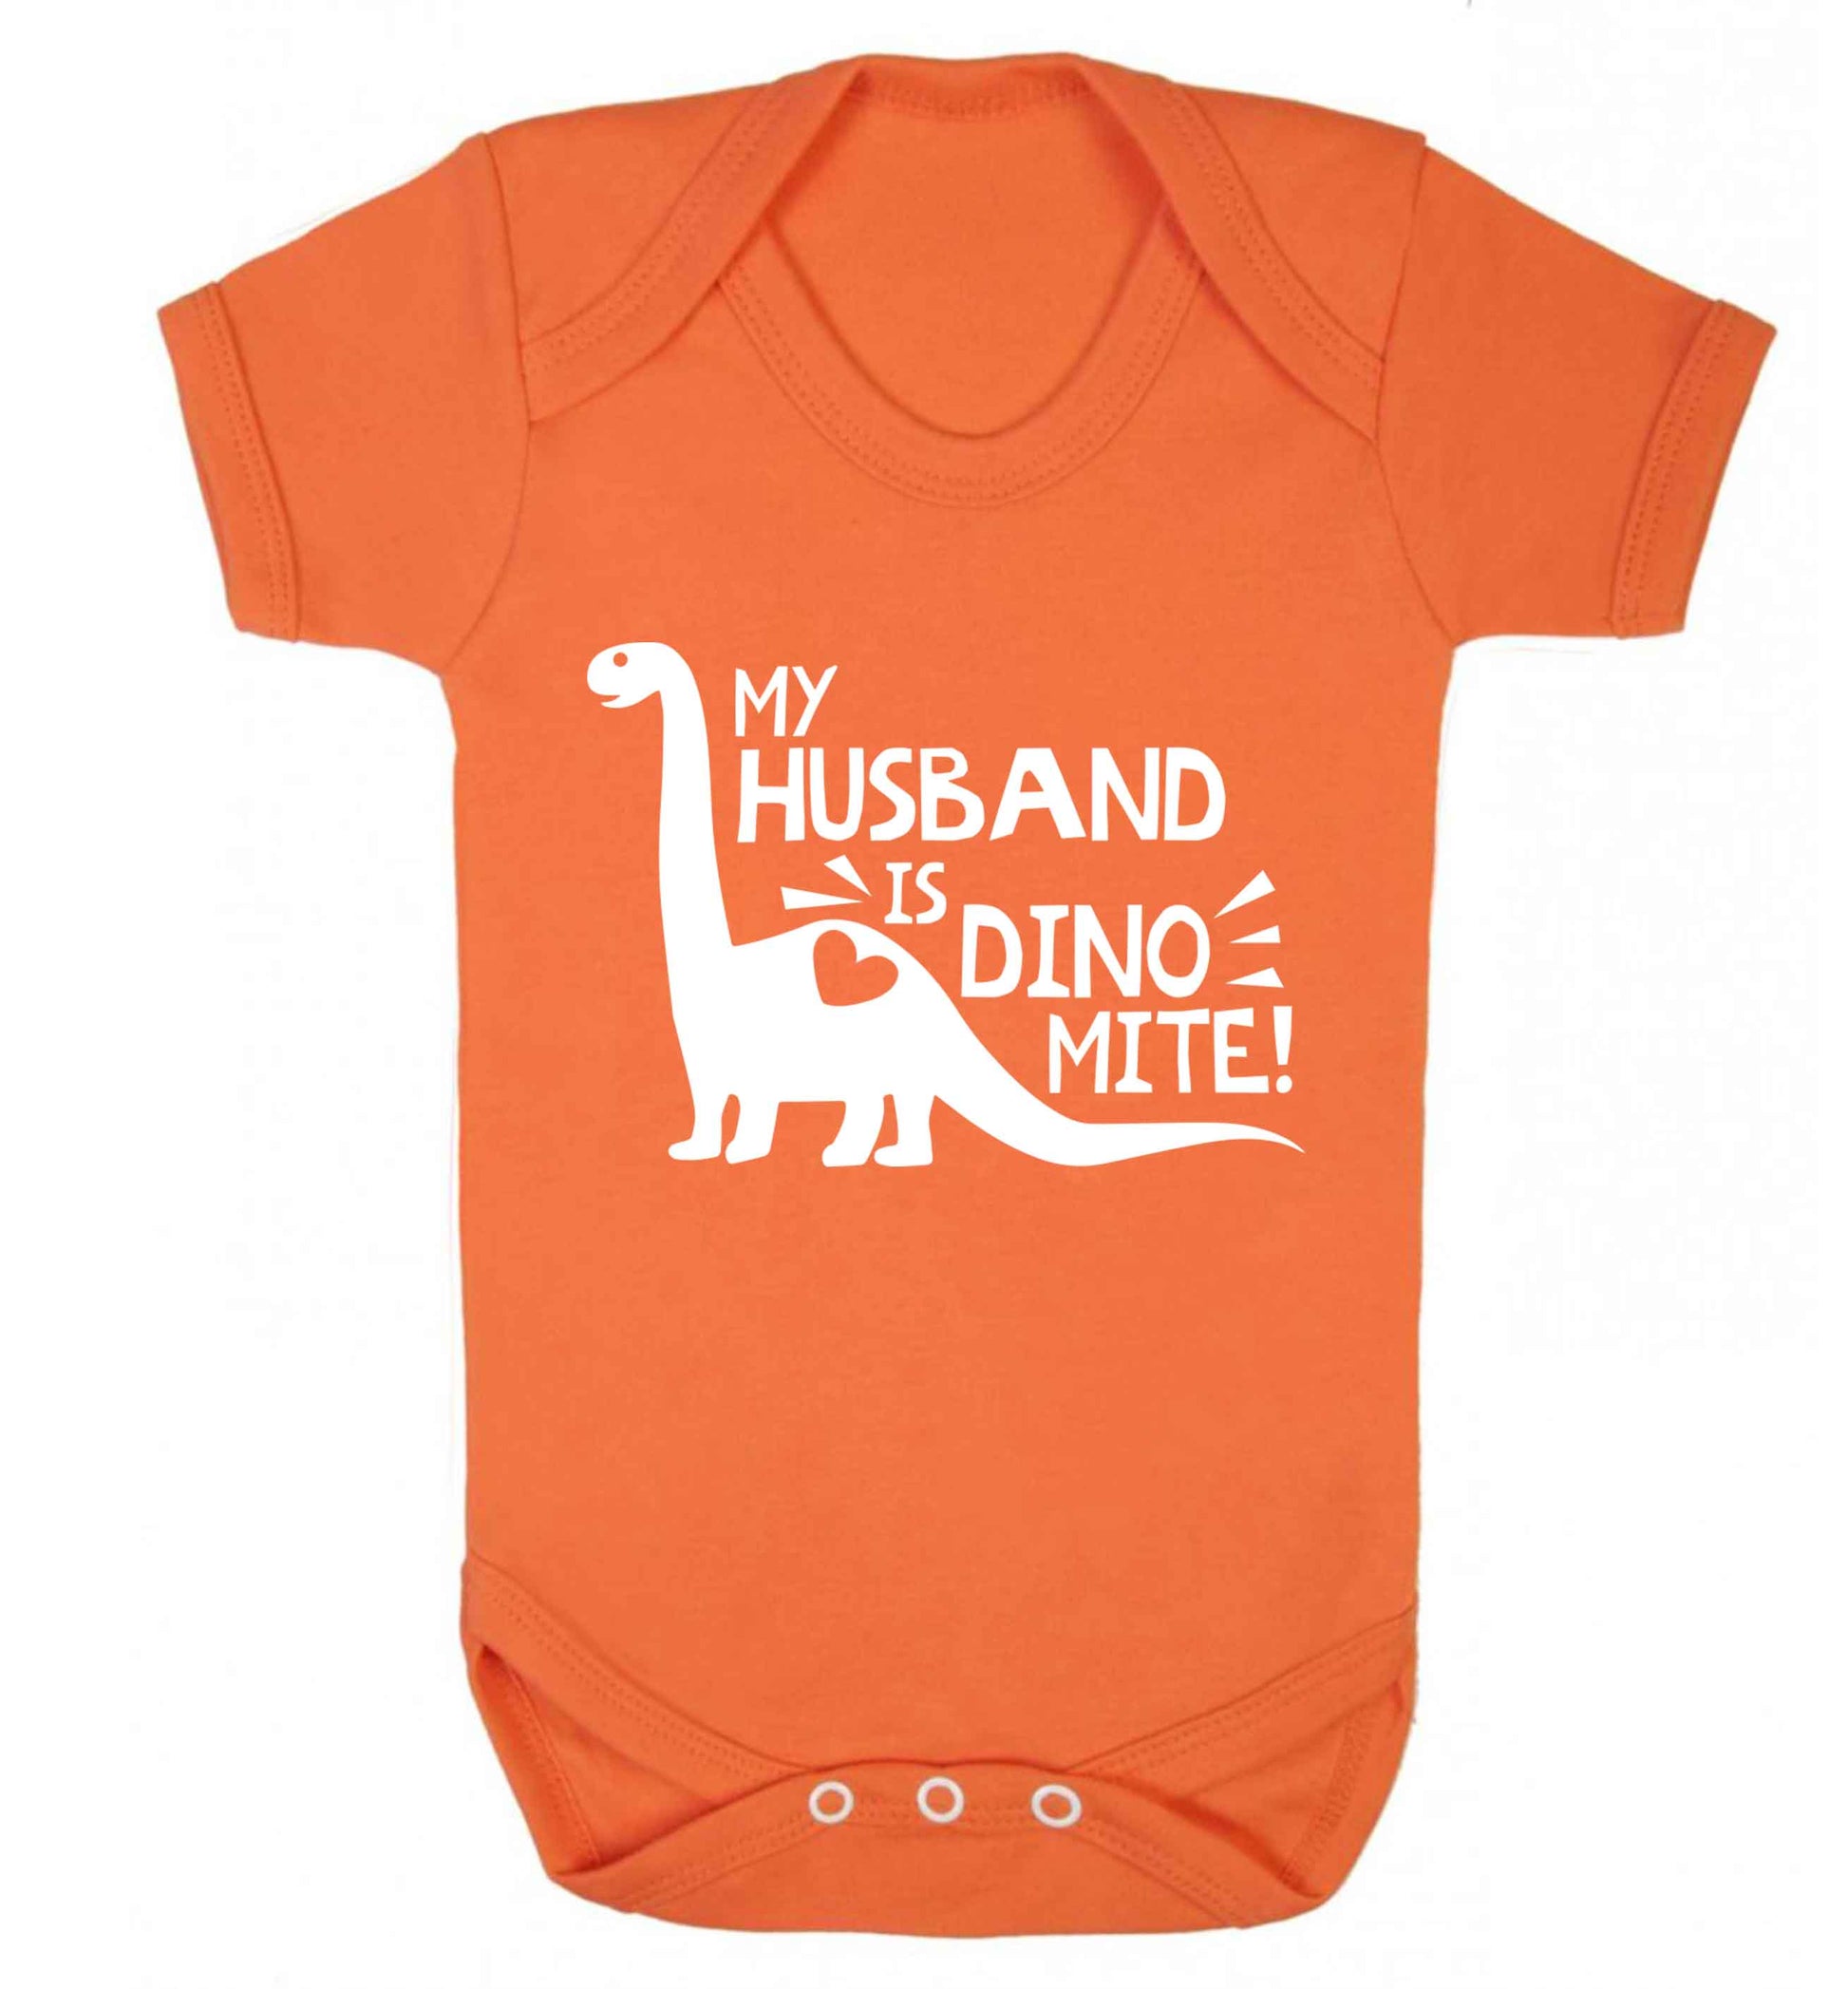 My husband is dinomite! Baby Vest orange 18-24 months